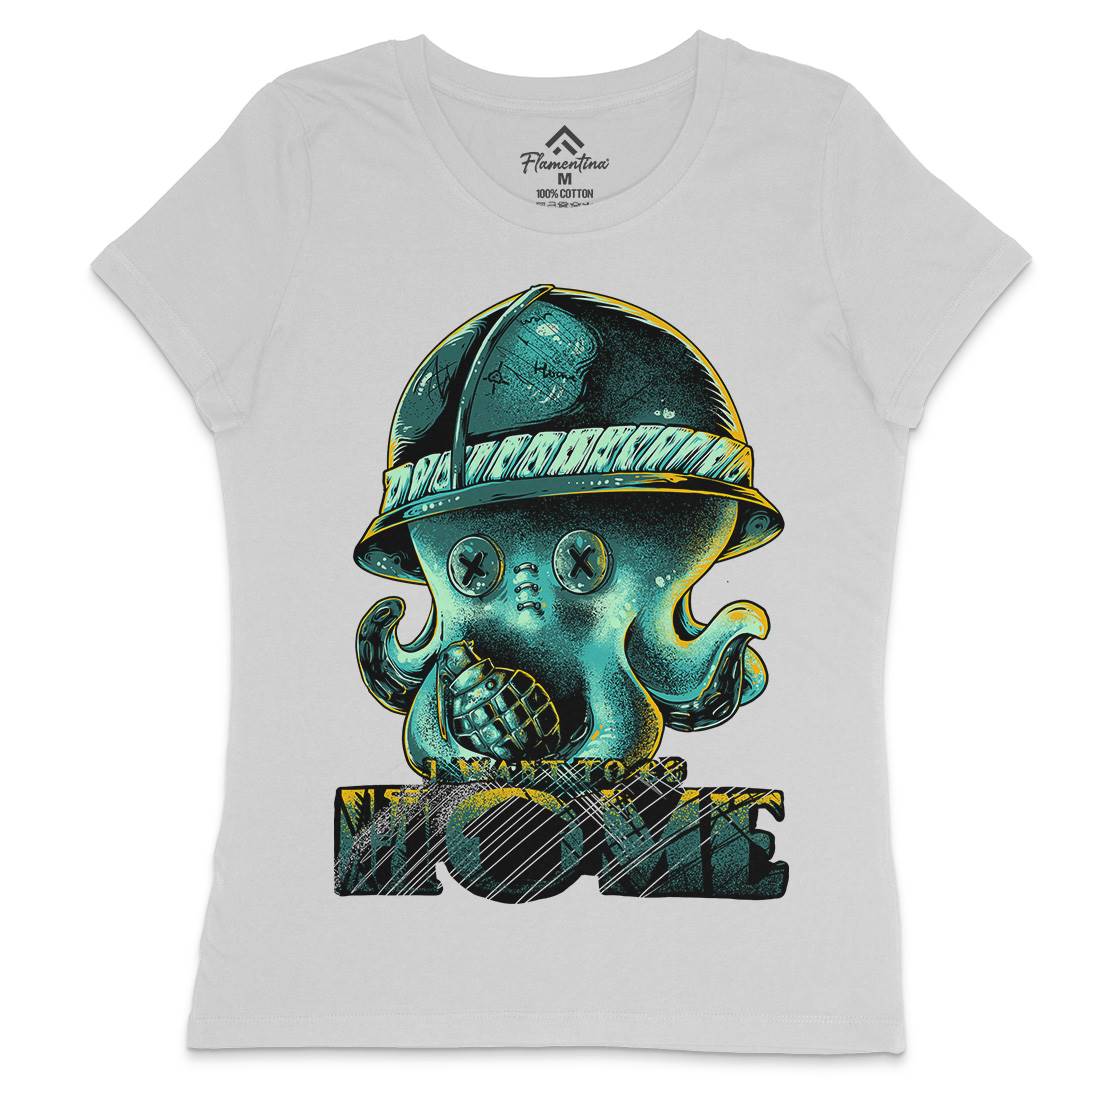 Octopus War Womens Crew Neck T-Shirt Army B993